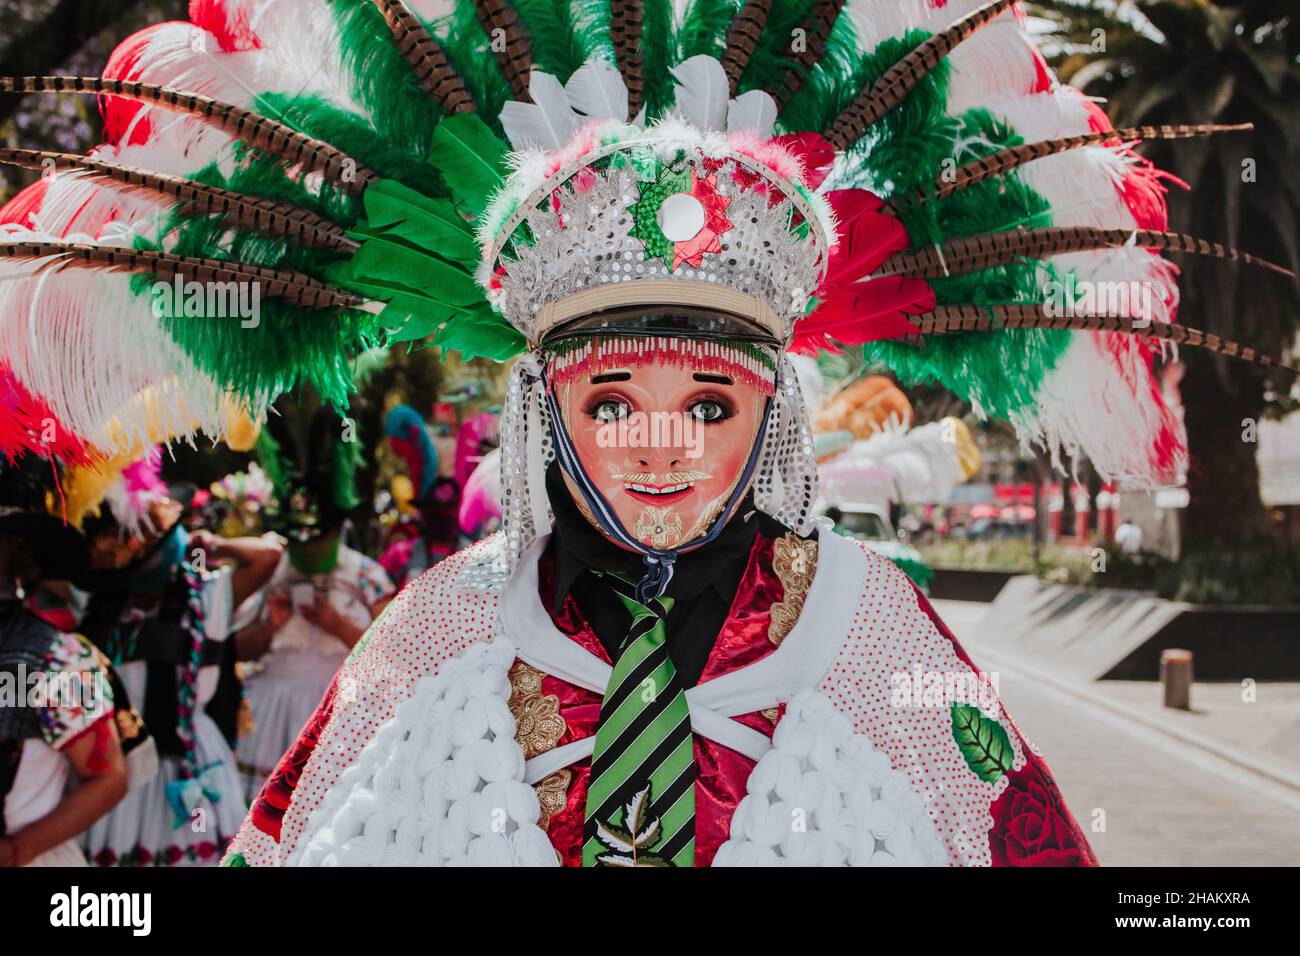 Huehues Mexico, danseur mexicain de carnaval portant un costume et un masque folkloriques traditionnels en Amérique latine Banque D'Images